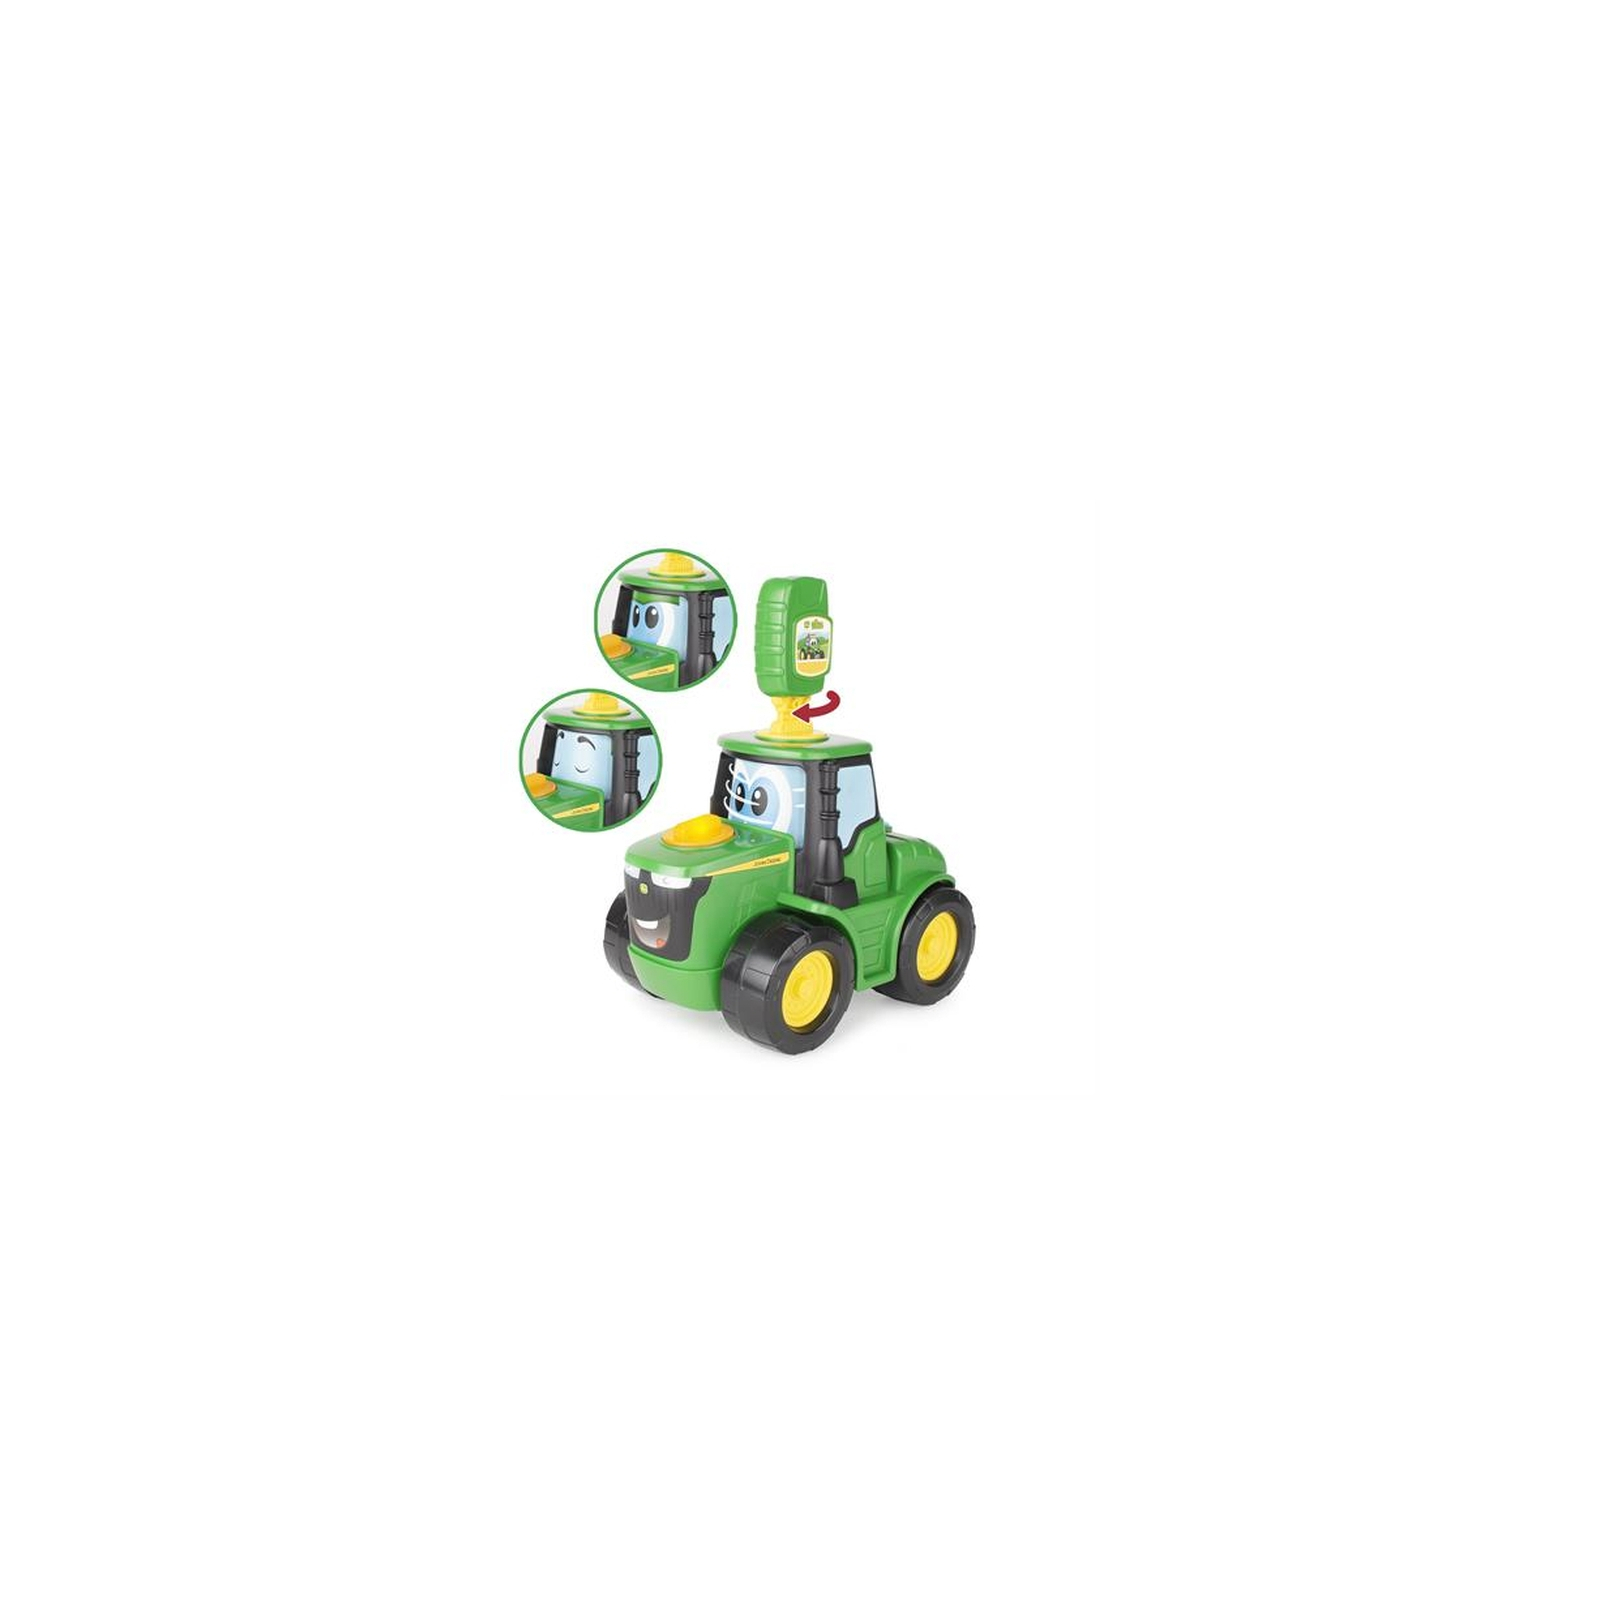 Спецтехника John Deere Kids трактор со светом и звуком (47500) изображение 4